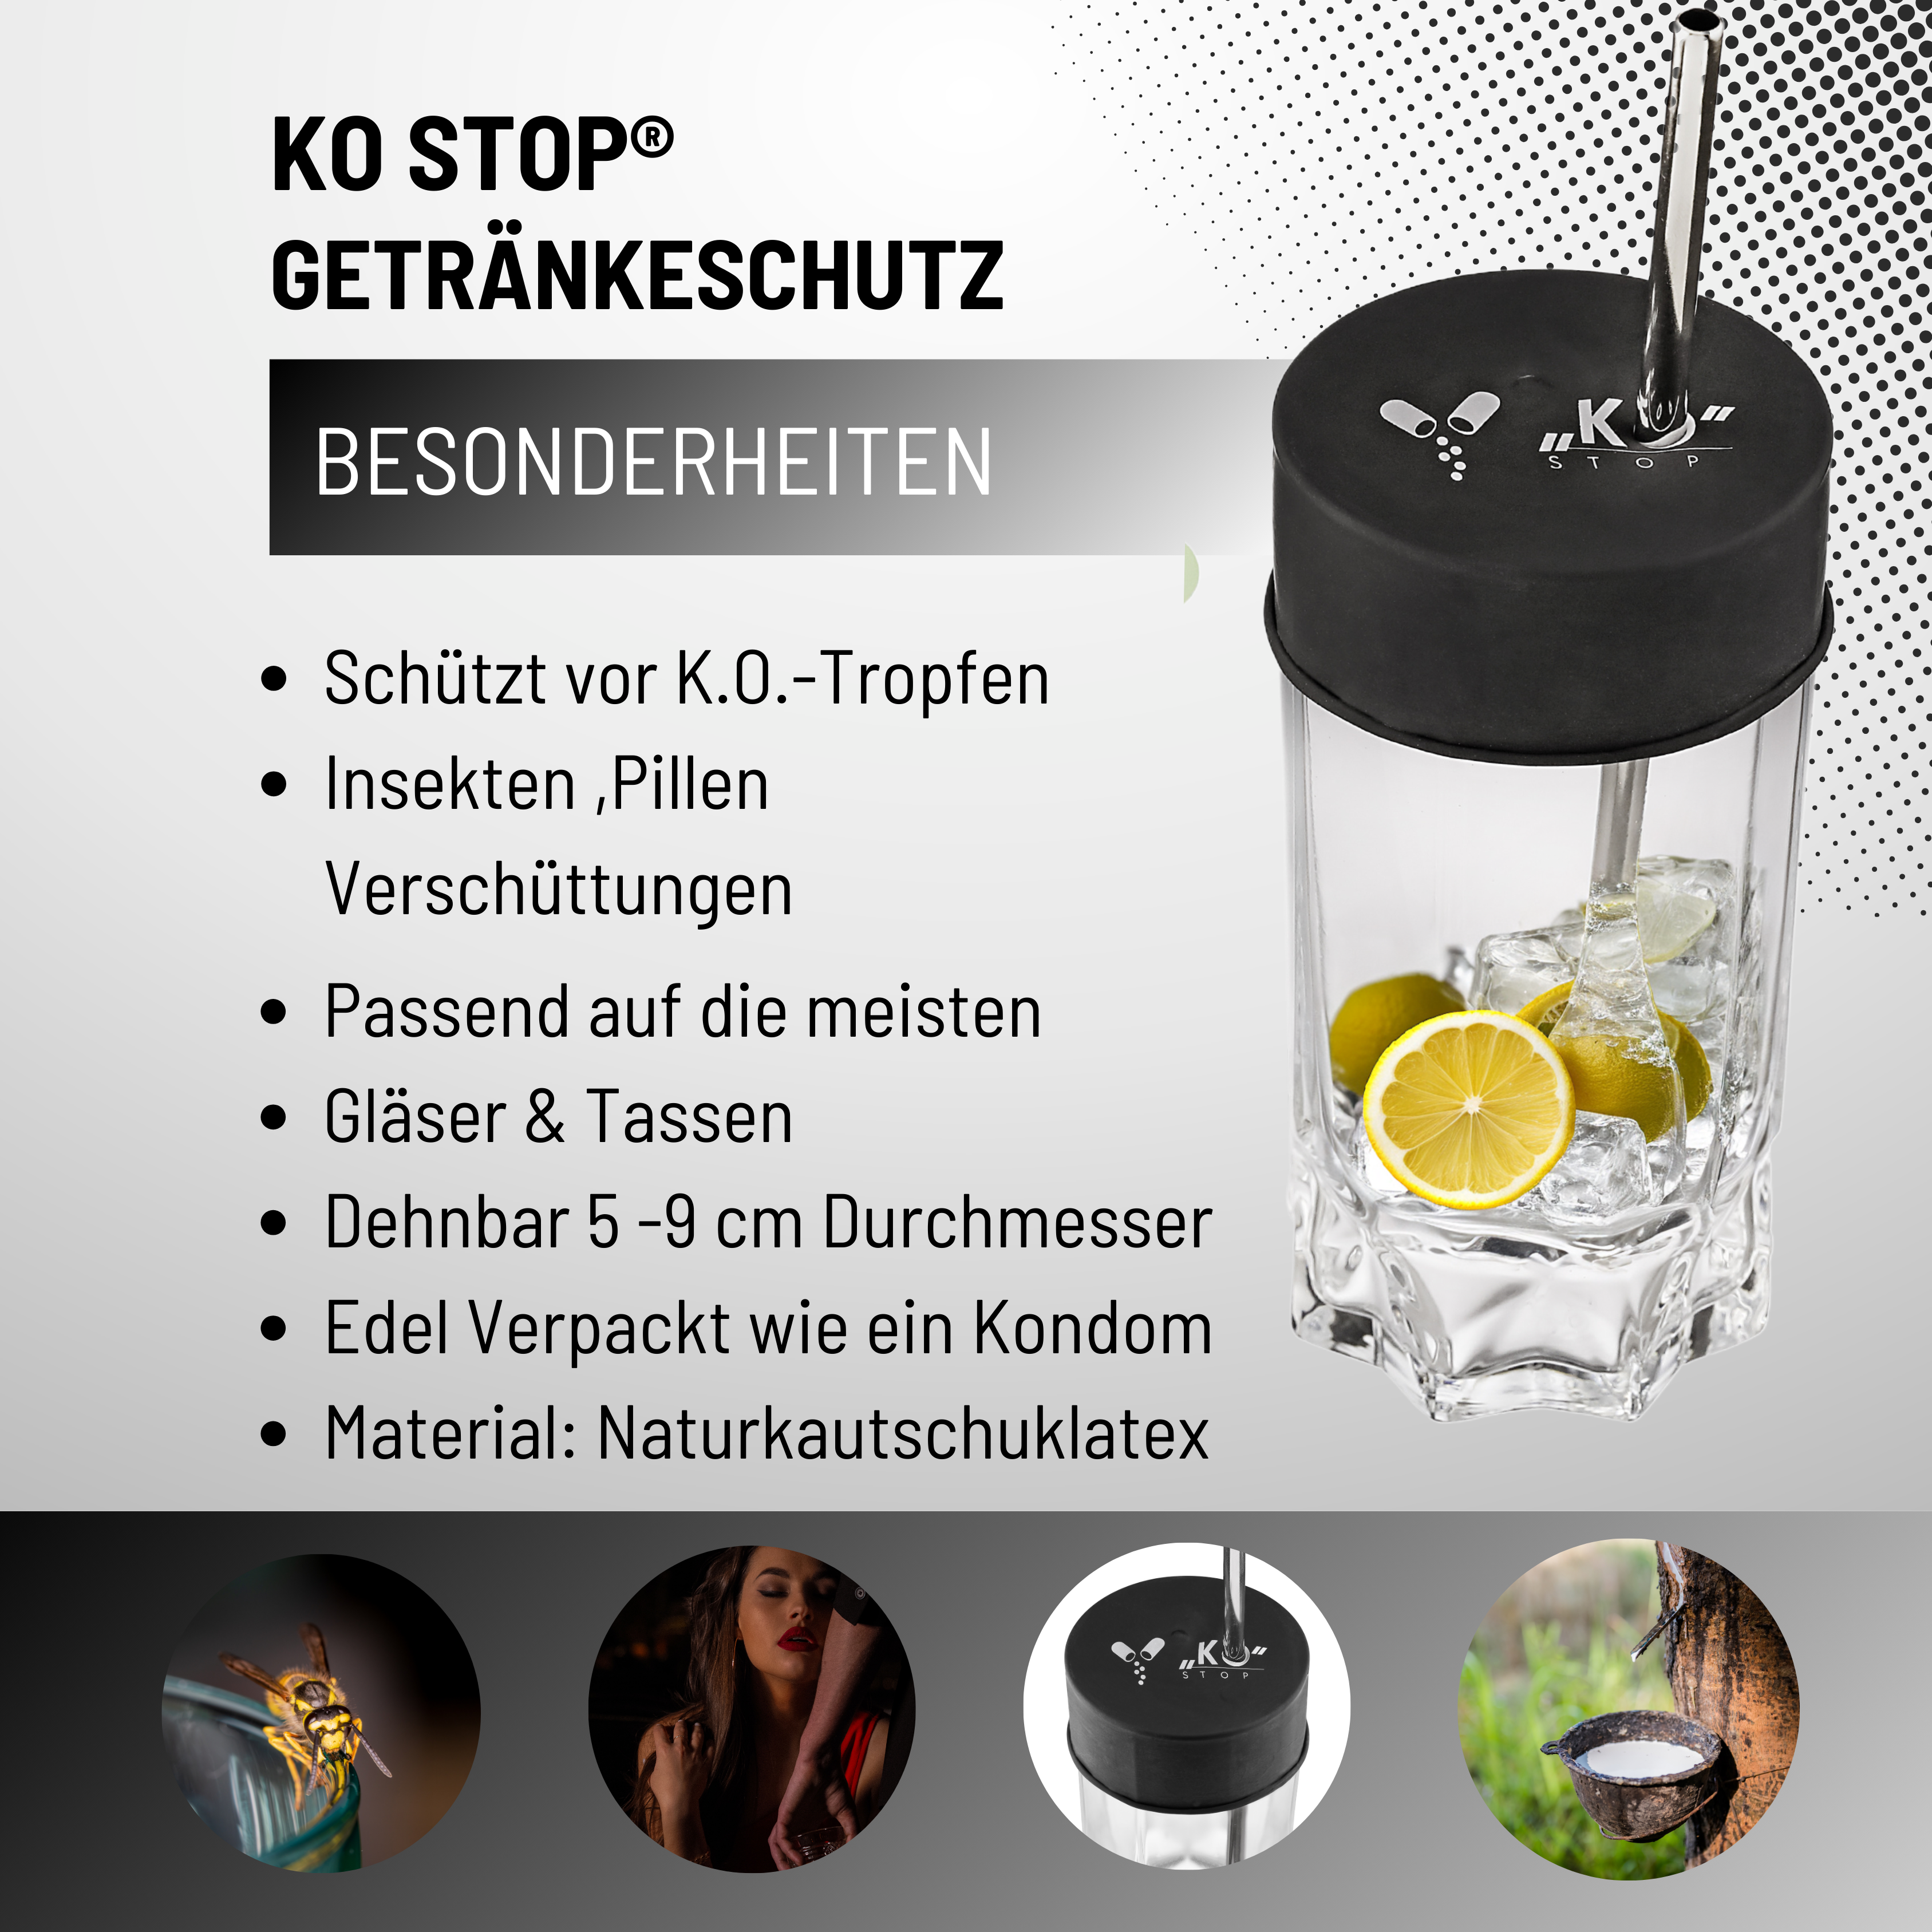 KO Stop® Natürlicher Naturkautschuklatex Getränkeschutz gegen K.o. Tropfen, Insekten und Verschüttungen